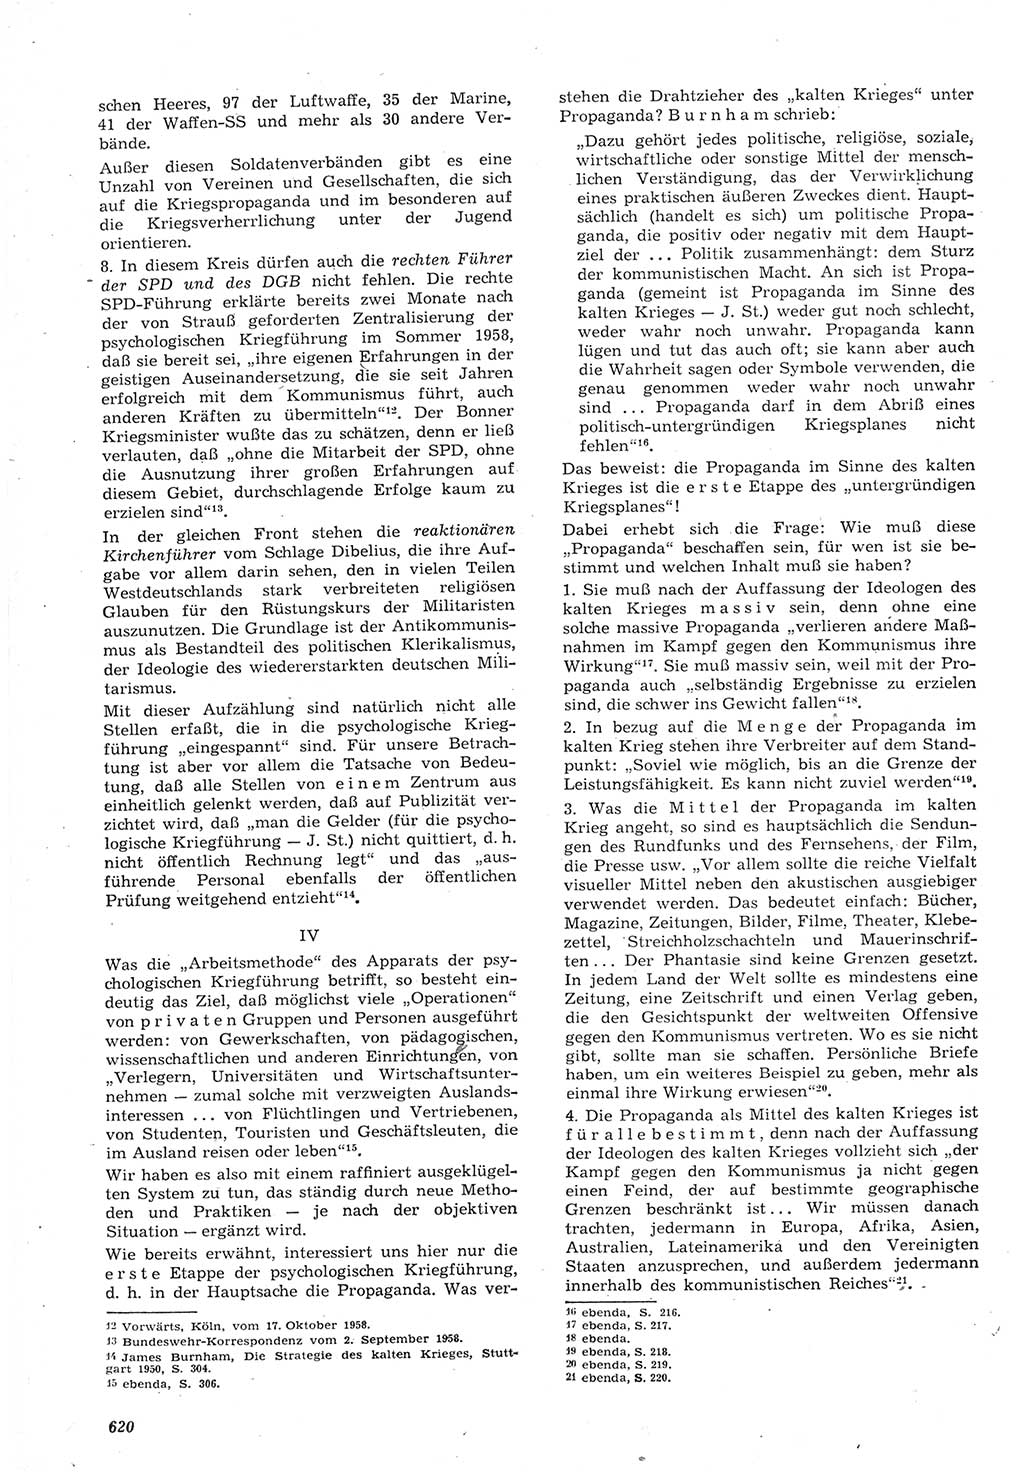 Neue Justiz (NJ), Zeitschrift für Recht und Rechtswissenschaft [Deutsche Demokratische Republik (DDR)], 15. Jahrgang 1961, Seite 620 (NJ DDR 1961, S. 620)